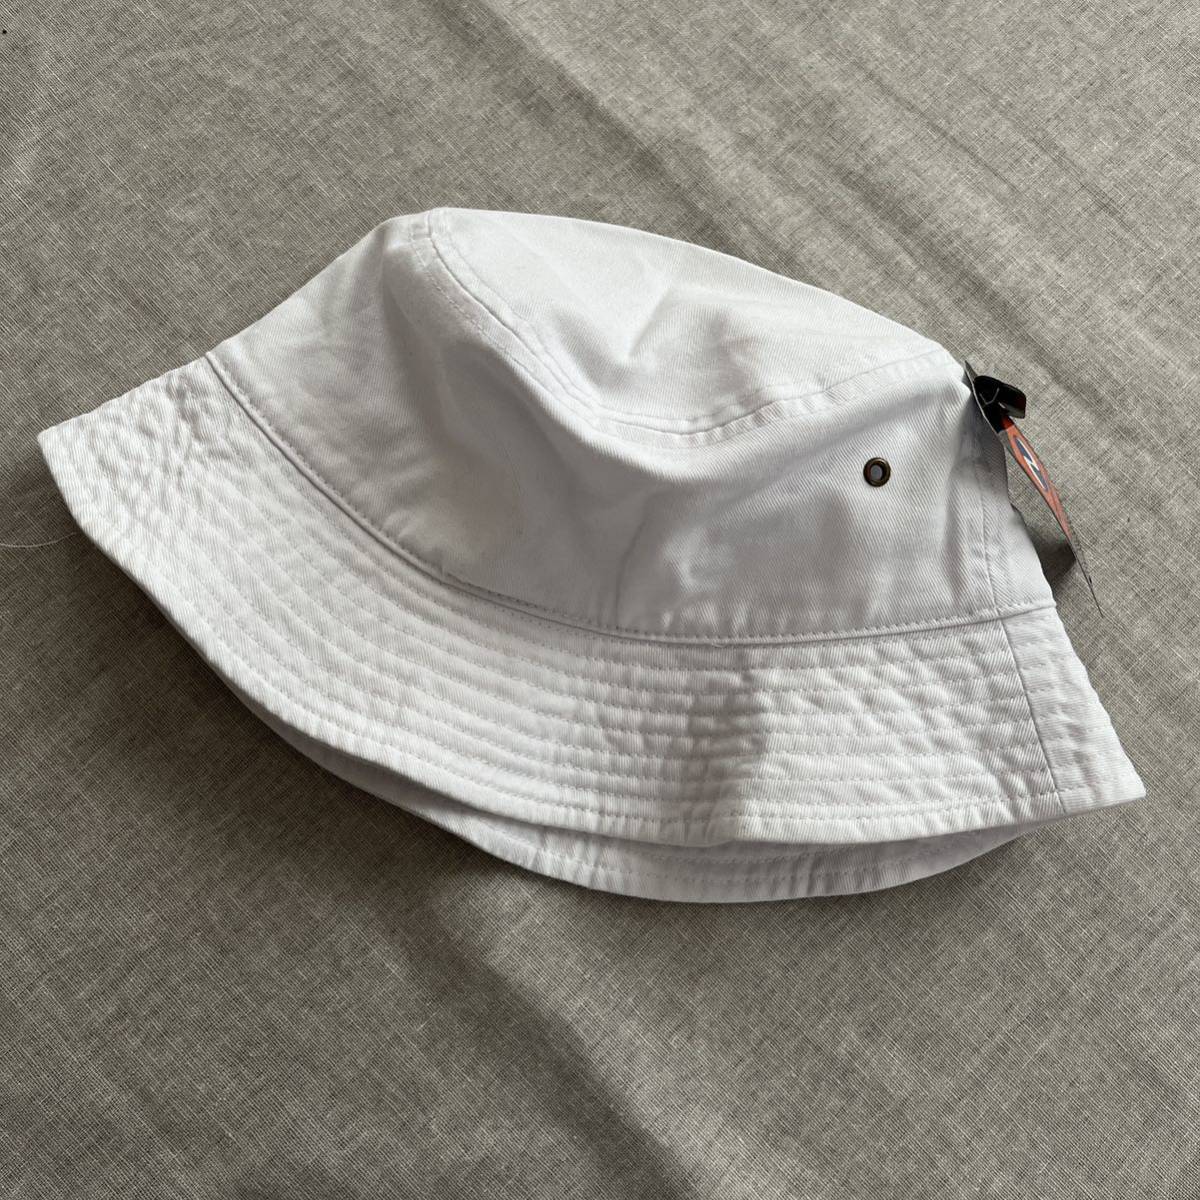 ニューハッタン コットン バケットハット 帽子 S/M ホワイト 白の画像2